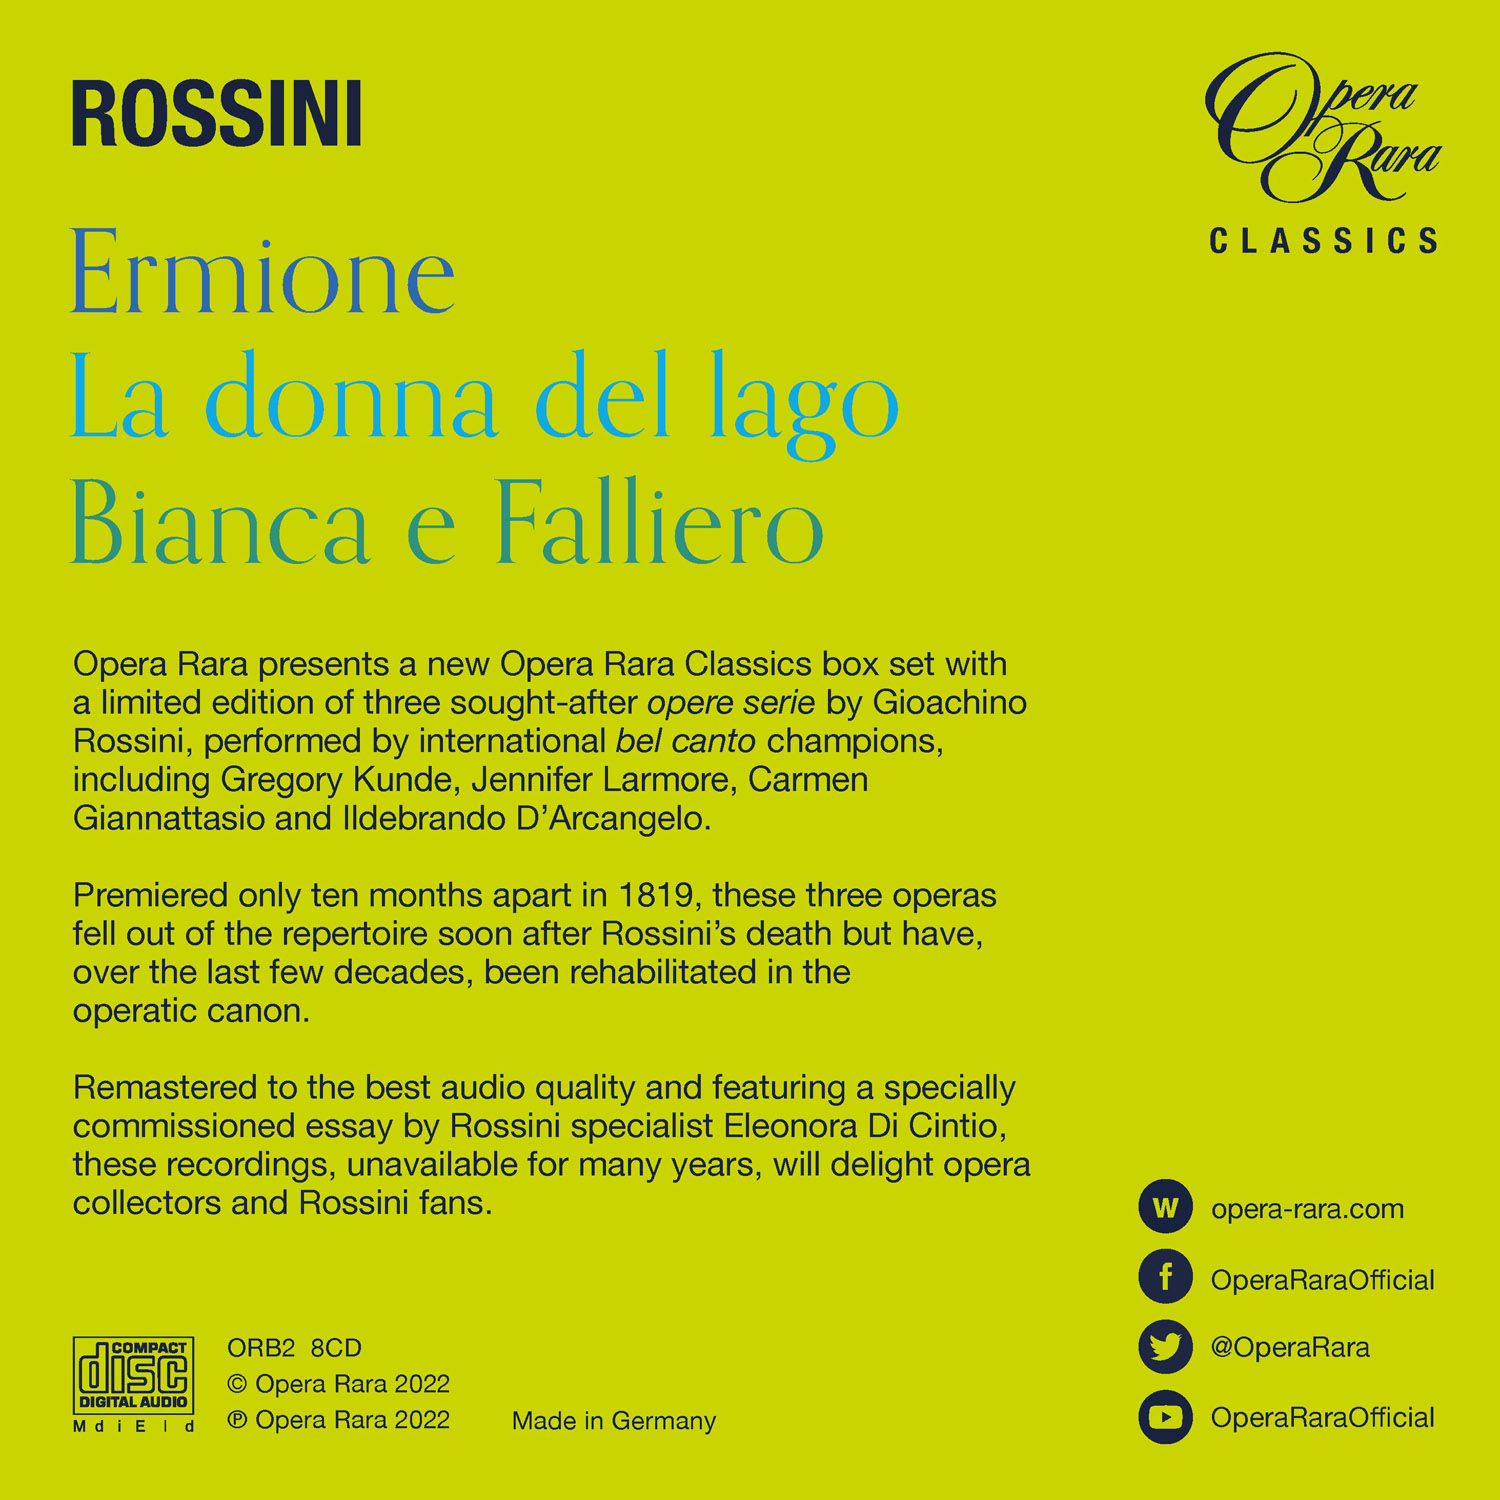 1819년의 로시니 - 오페라 '에르미오네', '호수의 여인', '비안카와 팔리에로' (Rossini: Three Complete Operas - Ermione, La donna del lago, Bianca e Falliero) 